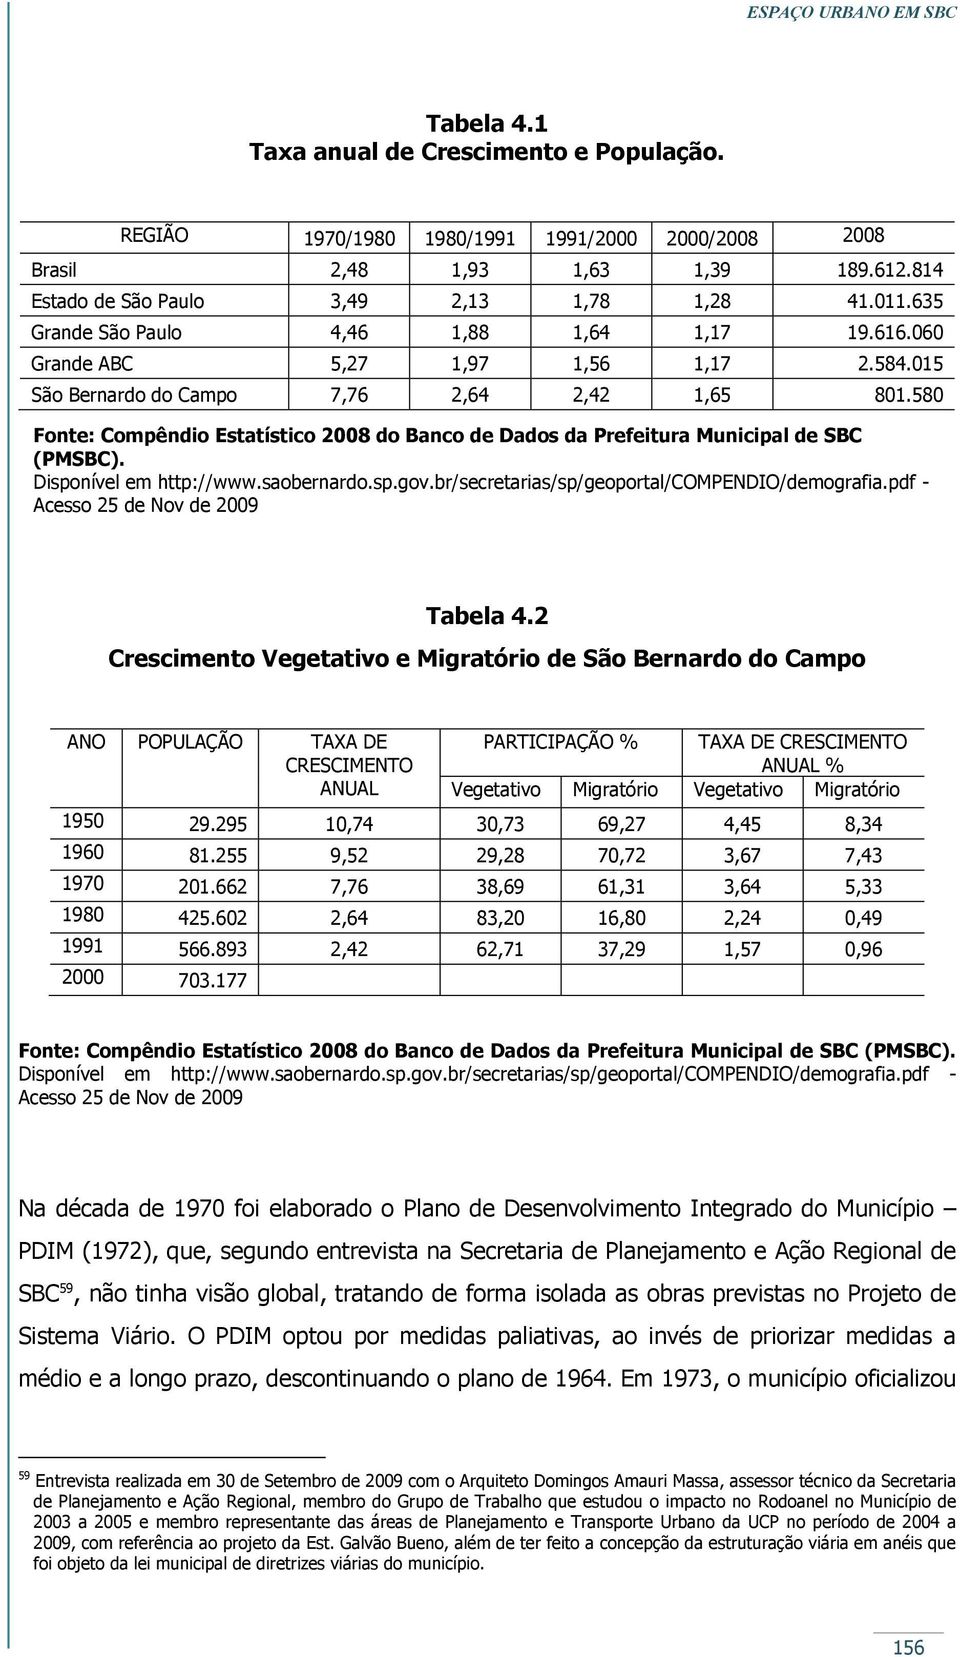 580 Fonte: Compêndio Estatístico 2008 do Banco de Dados da Prefeitura Municipal de SBC (PMSBC). Disponível em http://www.saobernardo.sp.gov.br/secretarias/sp/geoportal/compendio/demografia.